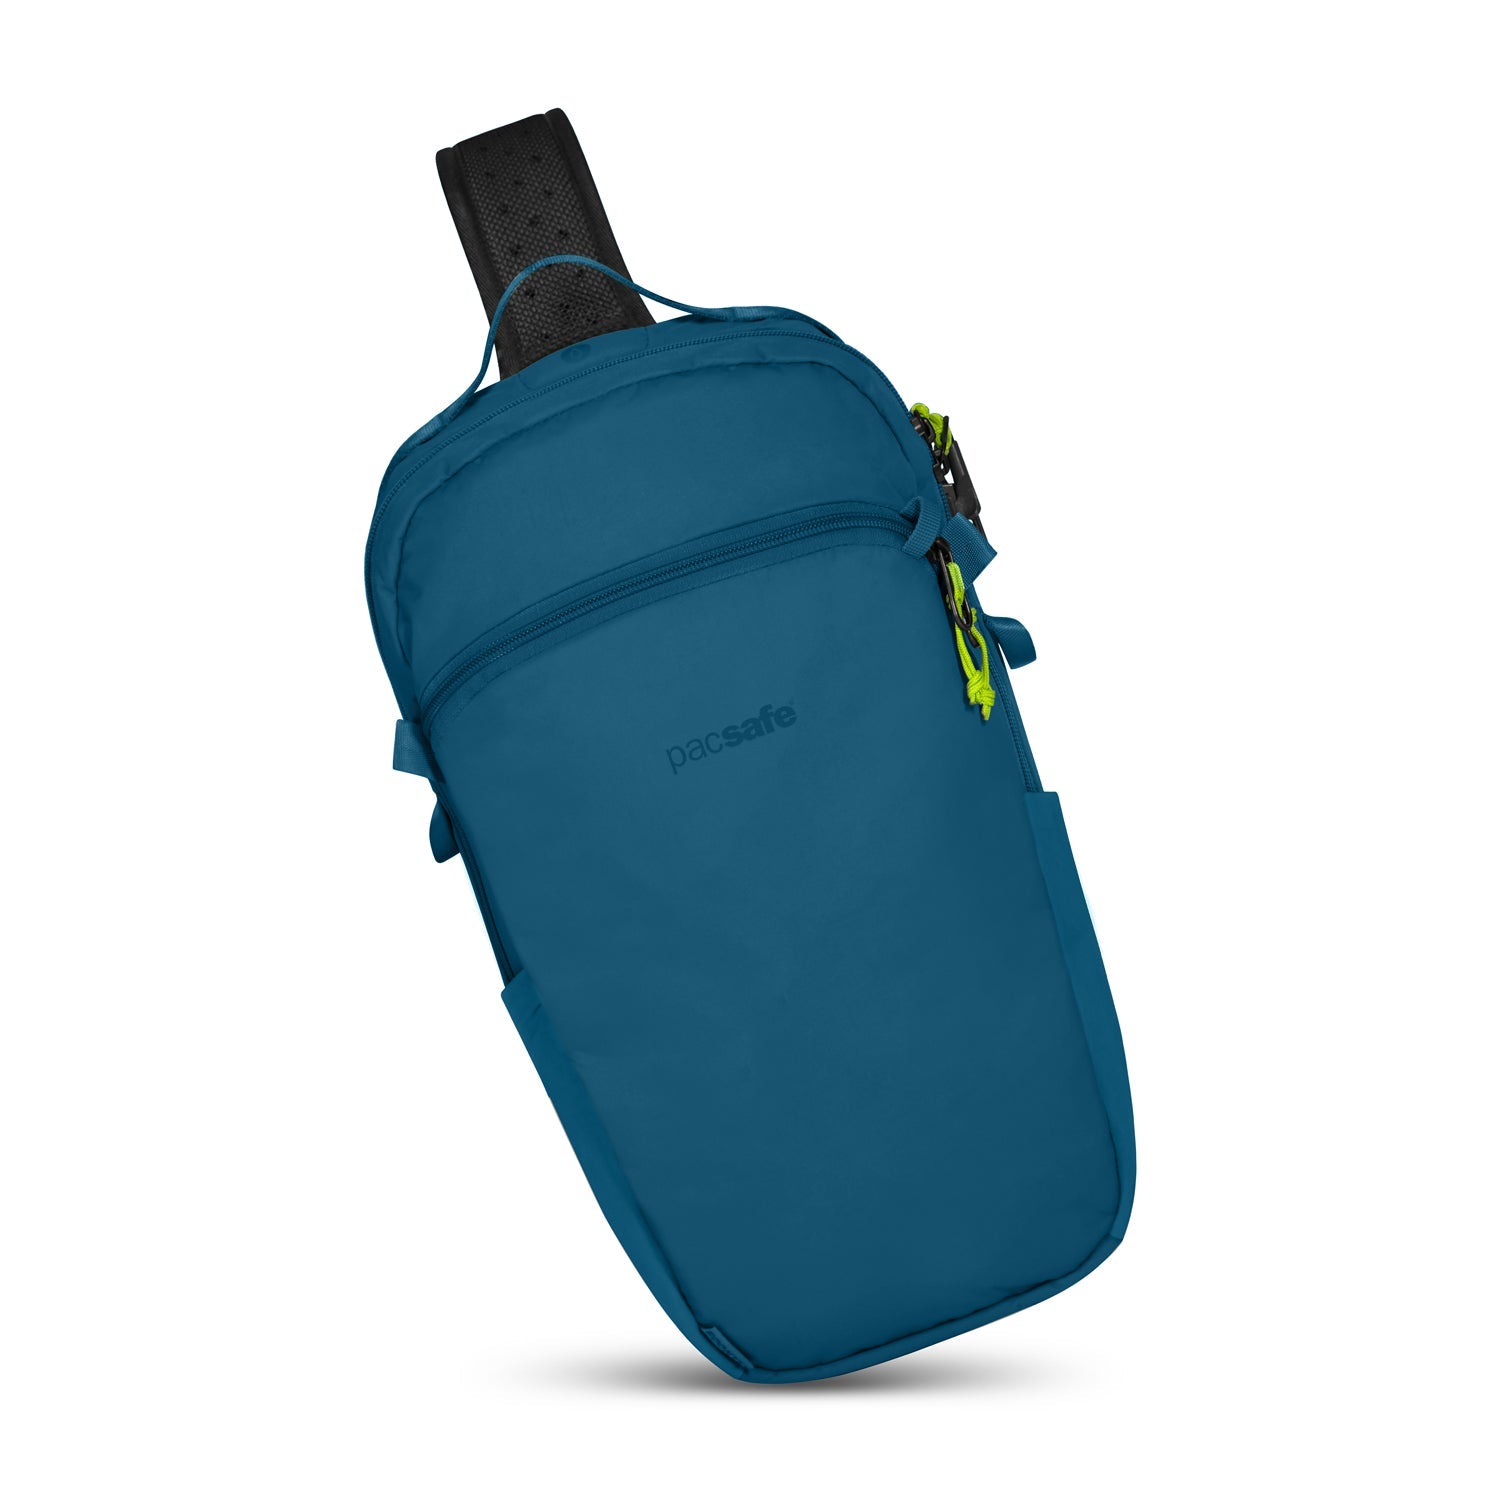 Pacsafe - Eco 12L Sling Backpack - Teal